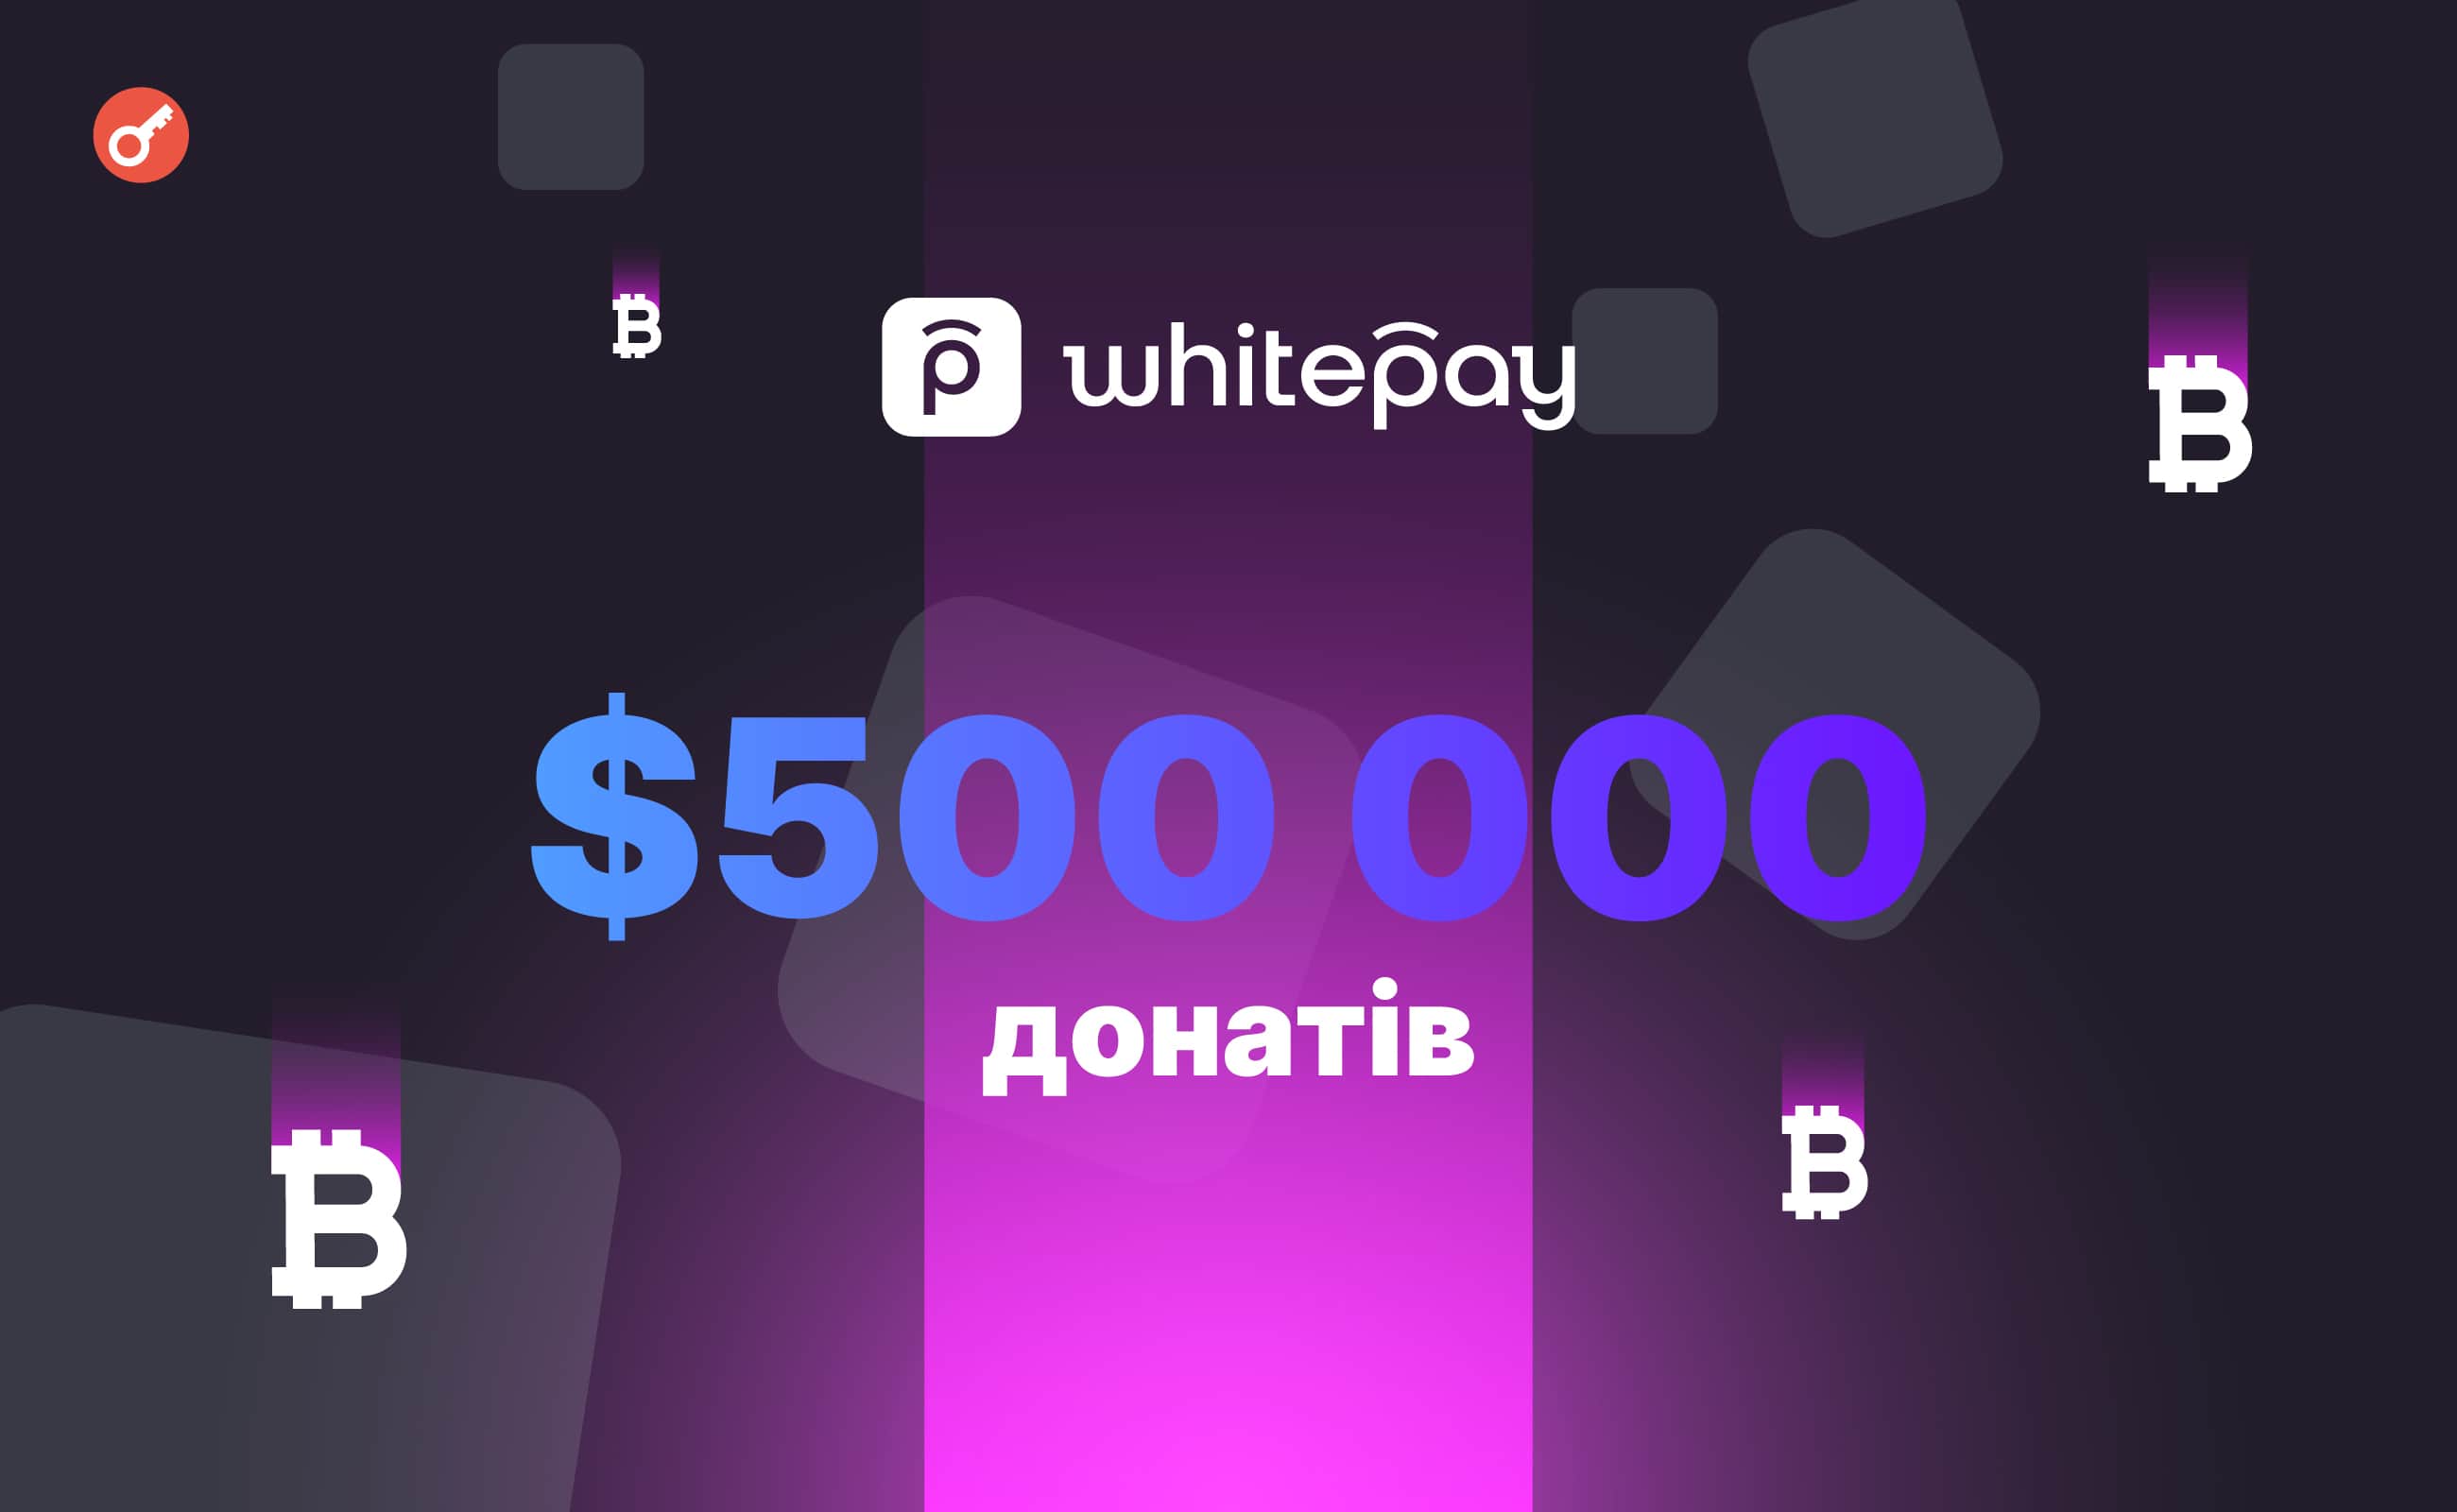 У 2023 році в Україні за допомогою Whitepay зібрали понад $500 000 донатів в криптовалюті. Головний колаж новини.